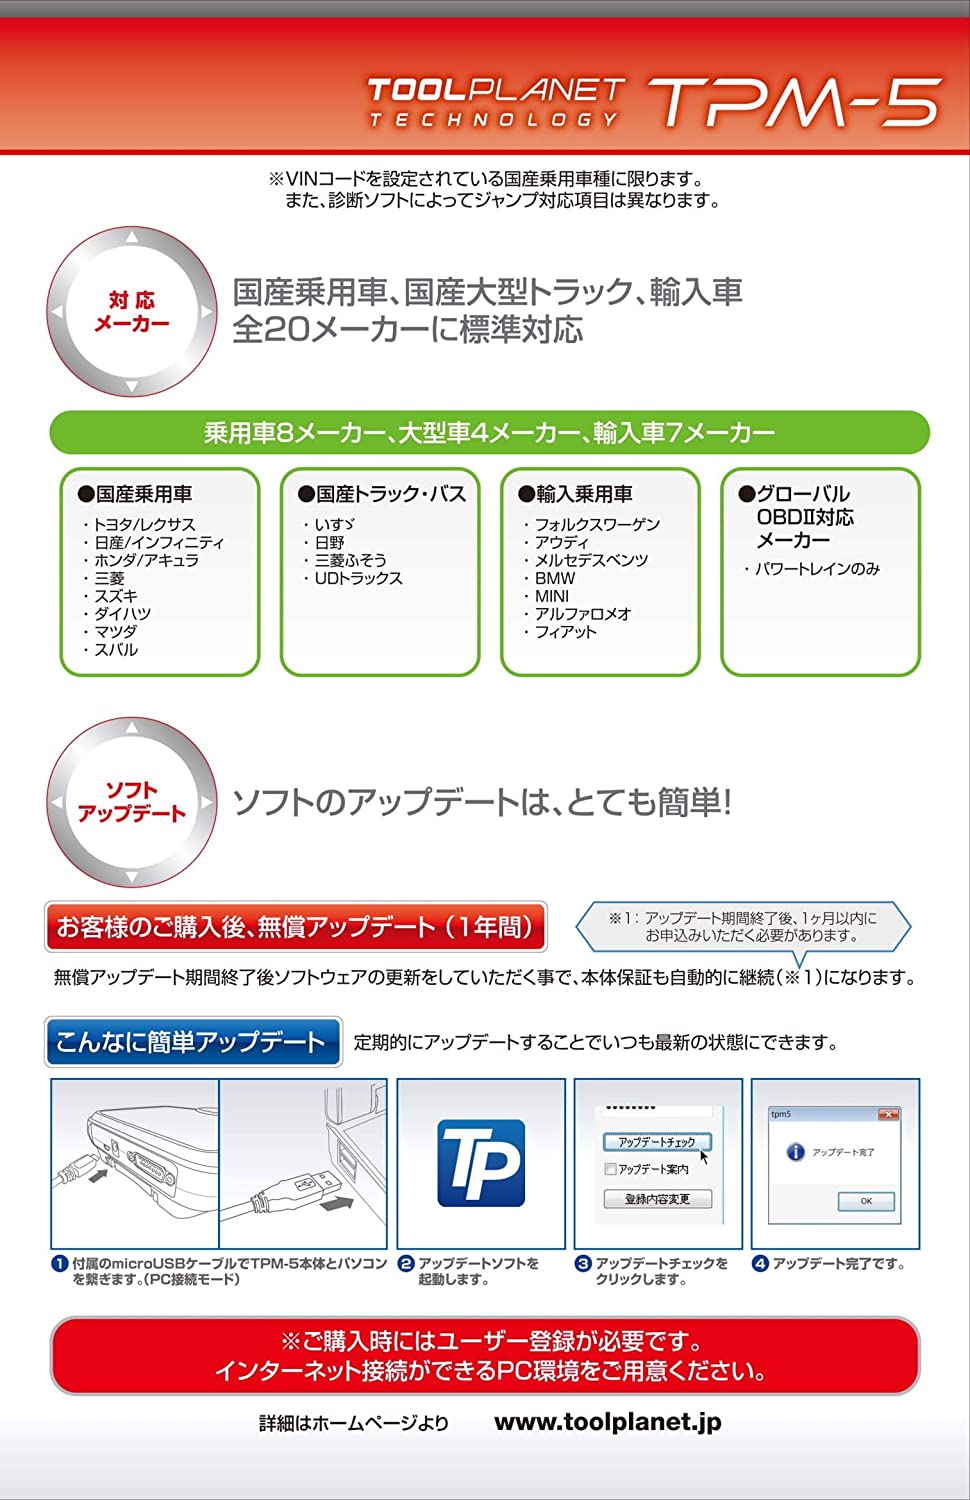 宮地ドットcom-自動車部品・カー用品の専門ショップ- 熊本八代の宮地部品 ツールプラネット TPM-5